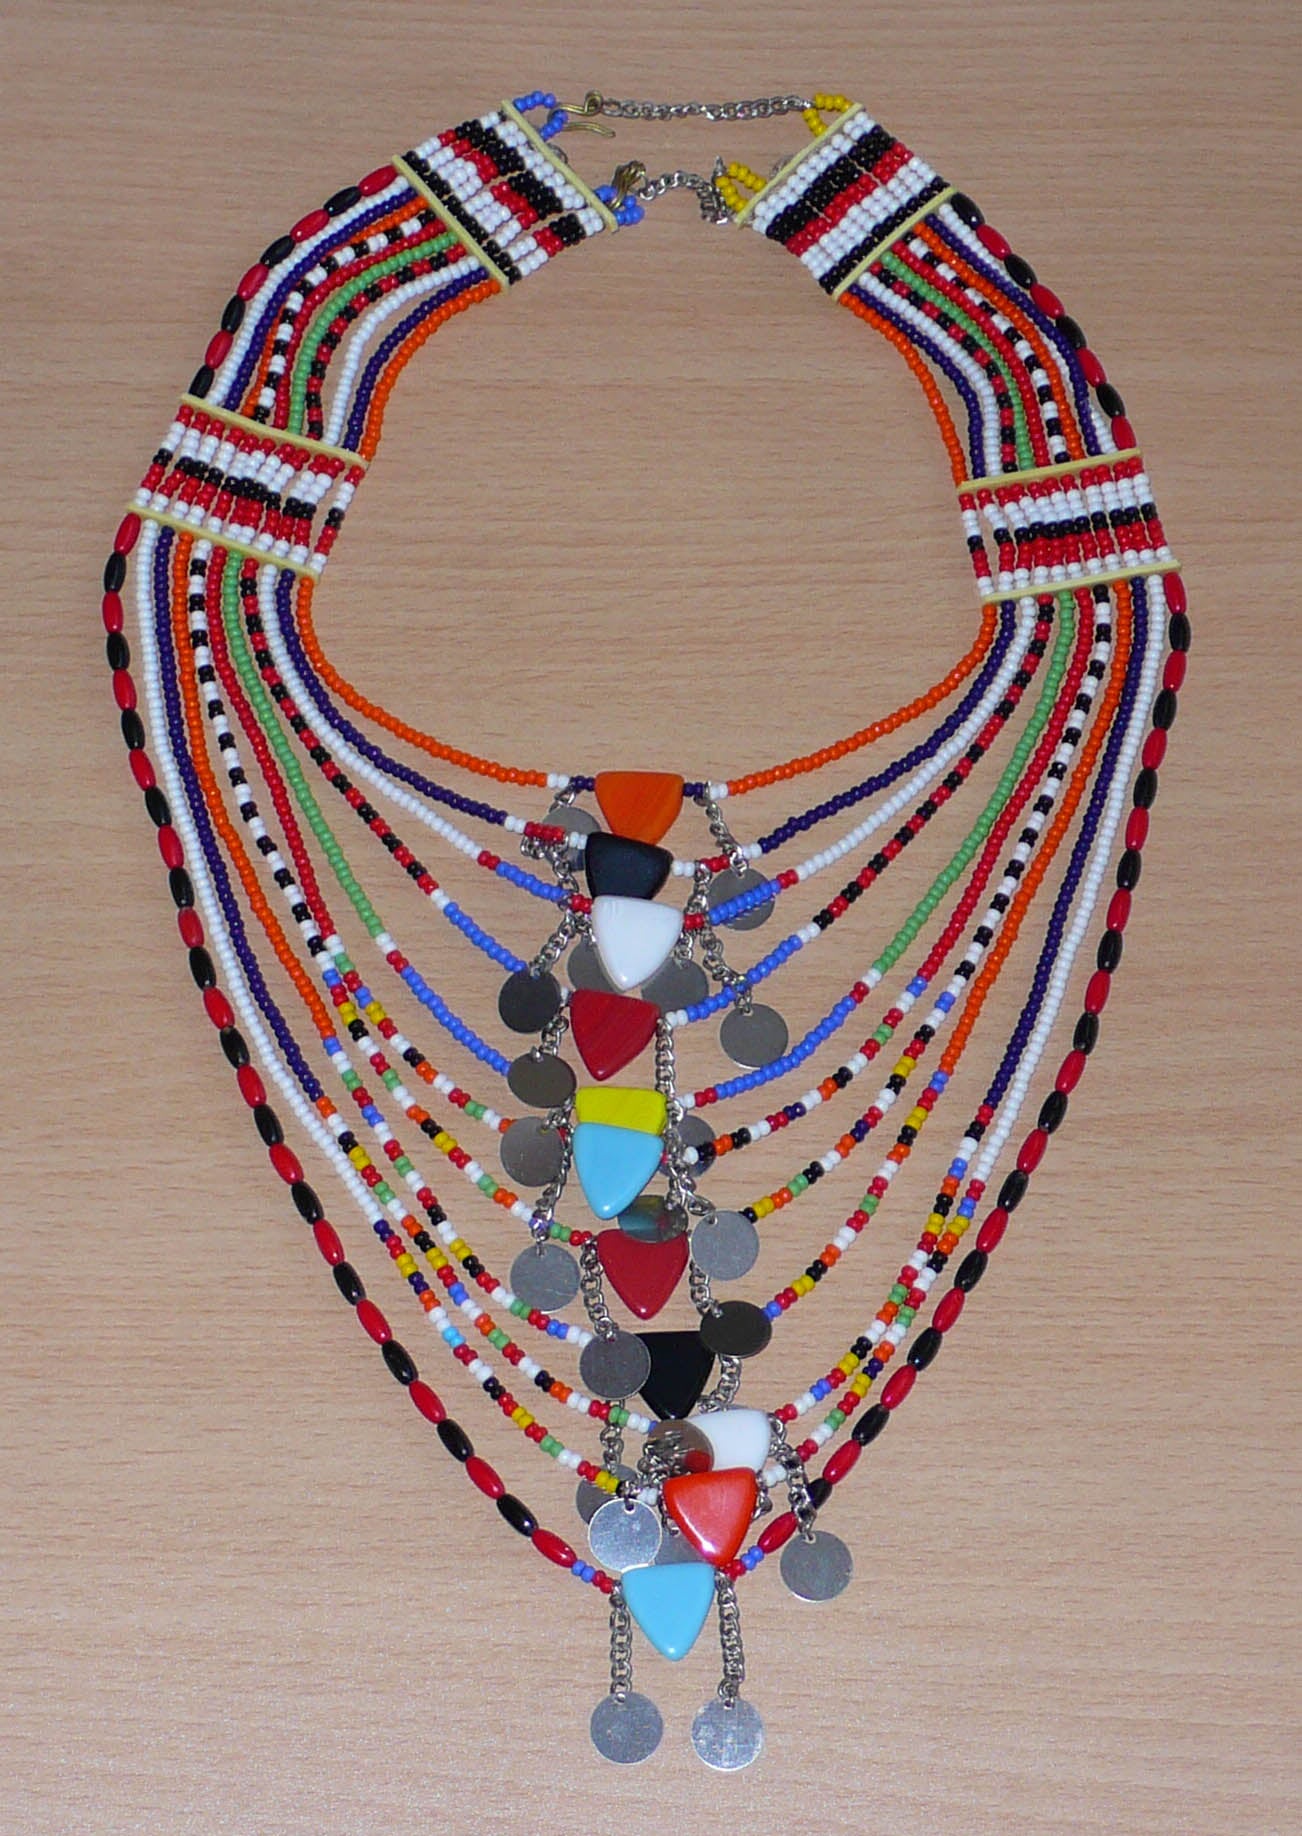 Collier africain traditionnel Massai composé de onze rangées de perles de rocaille et de plastique multicolores. Des perles triangulaires colorées et des pastilles en métal décorent le collier en son centre. Il mesure 38 cm de long, avec une longueur de tour de cou de 46 cm. Timeless Fineries